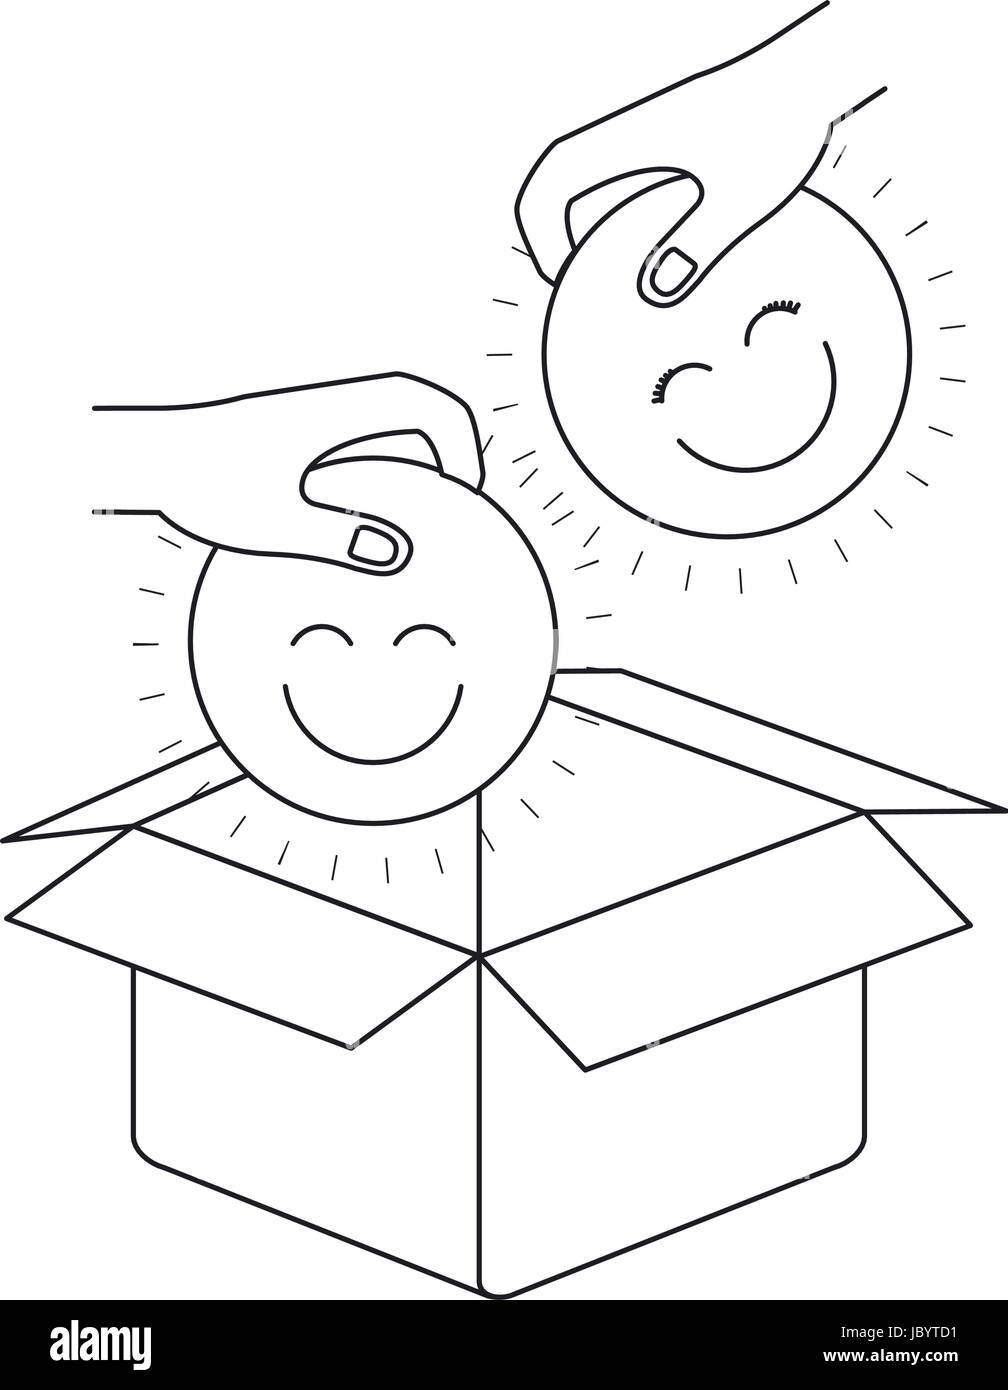 Silhouette Vue latérale des deux mains tenant un symbole des visages heureux de déposer dans la boîte de carton Illustration de Vecteur